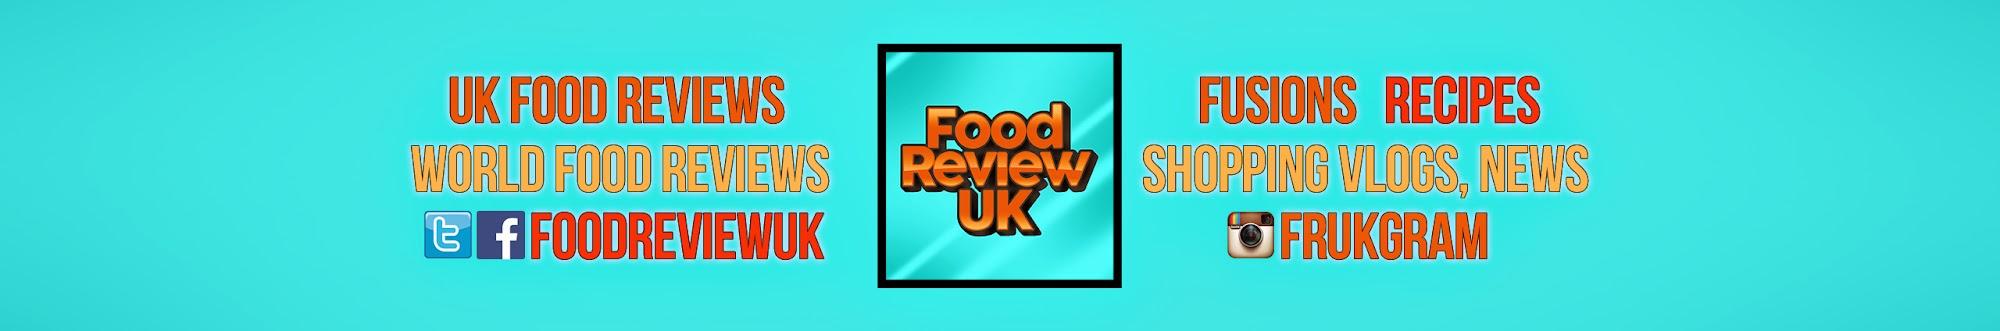 Food Review UK